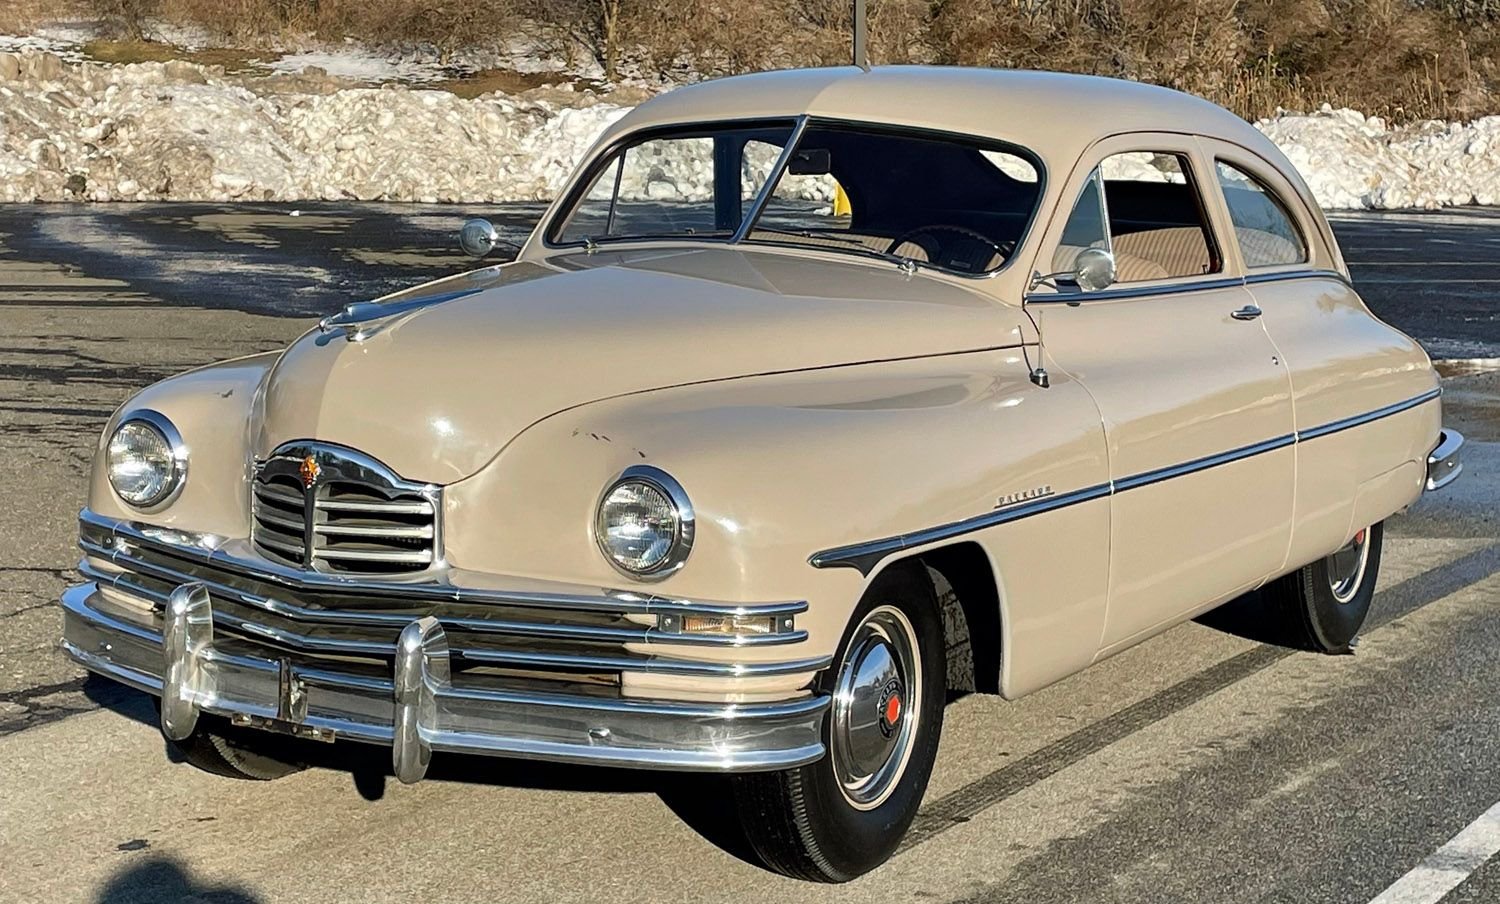 1949 Packard Eight